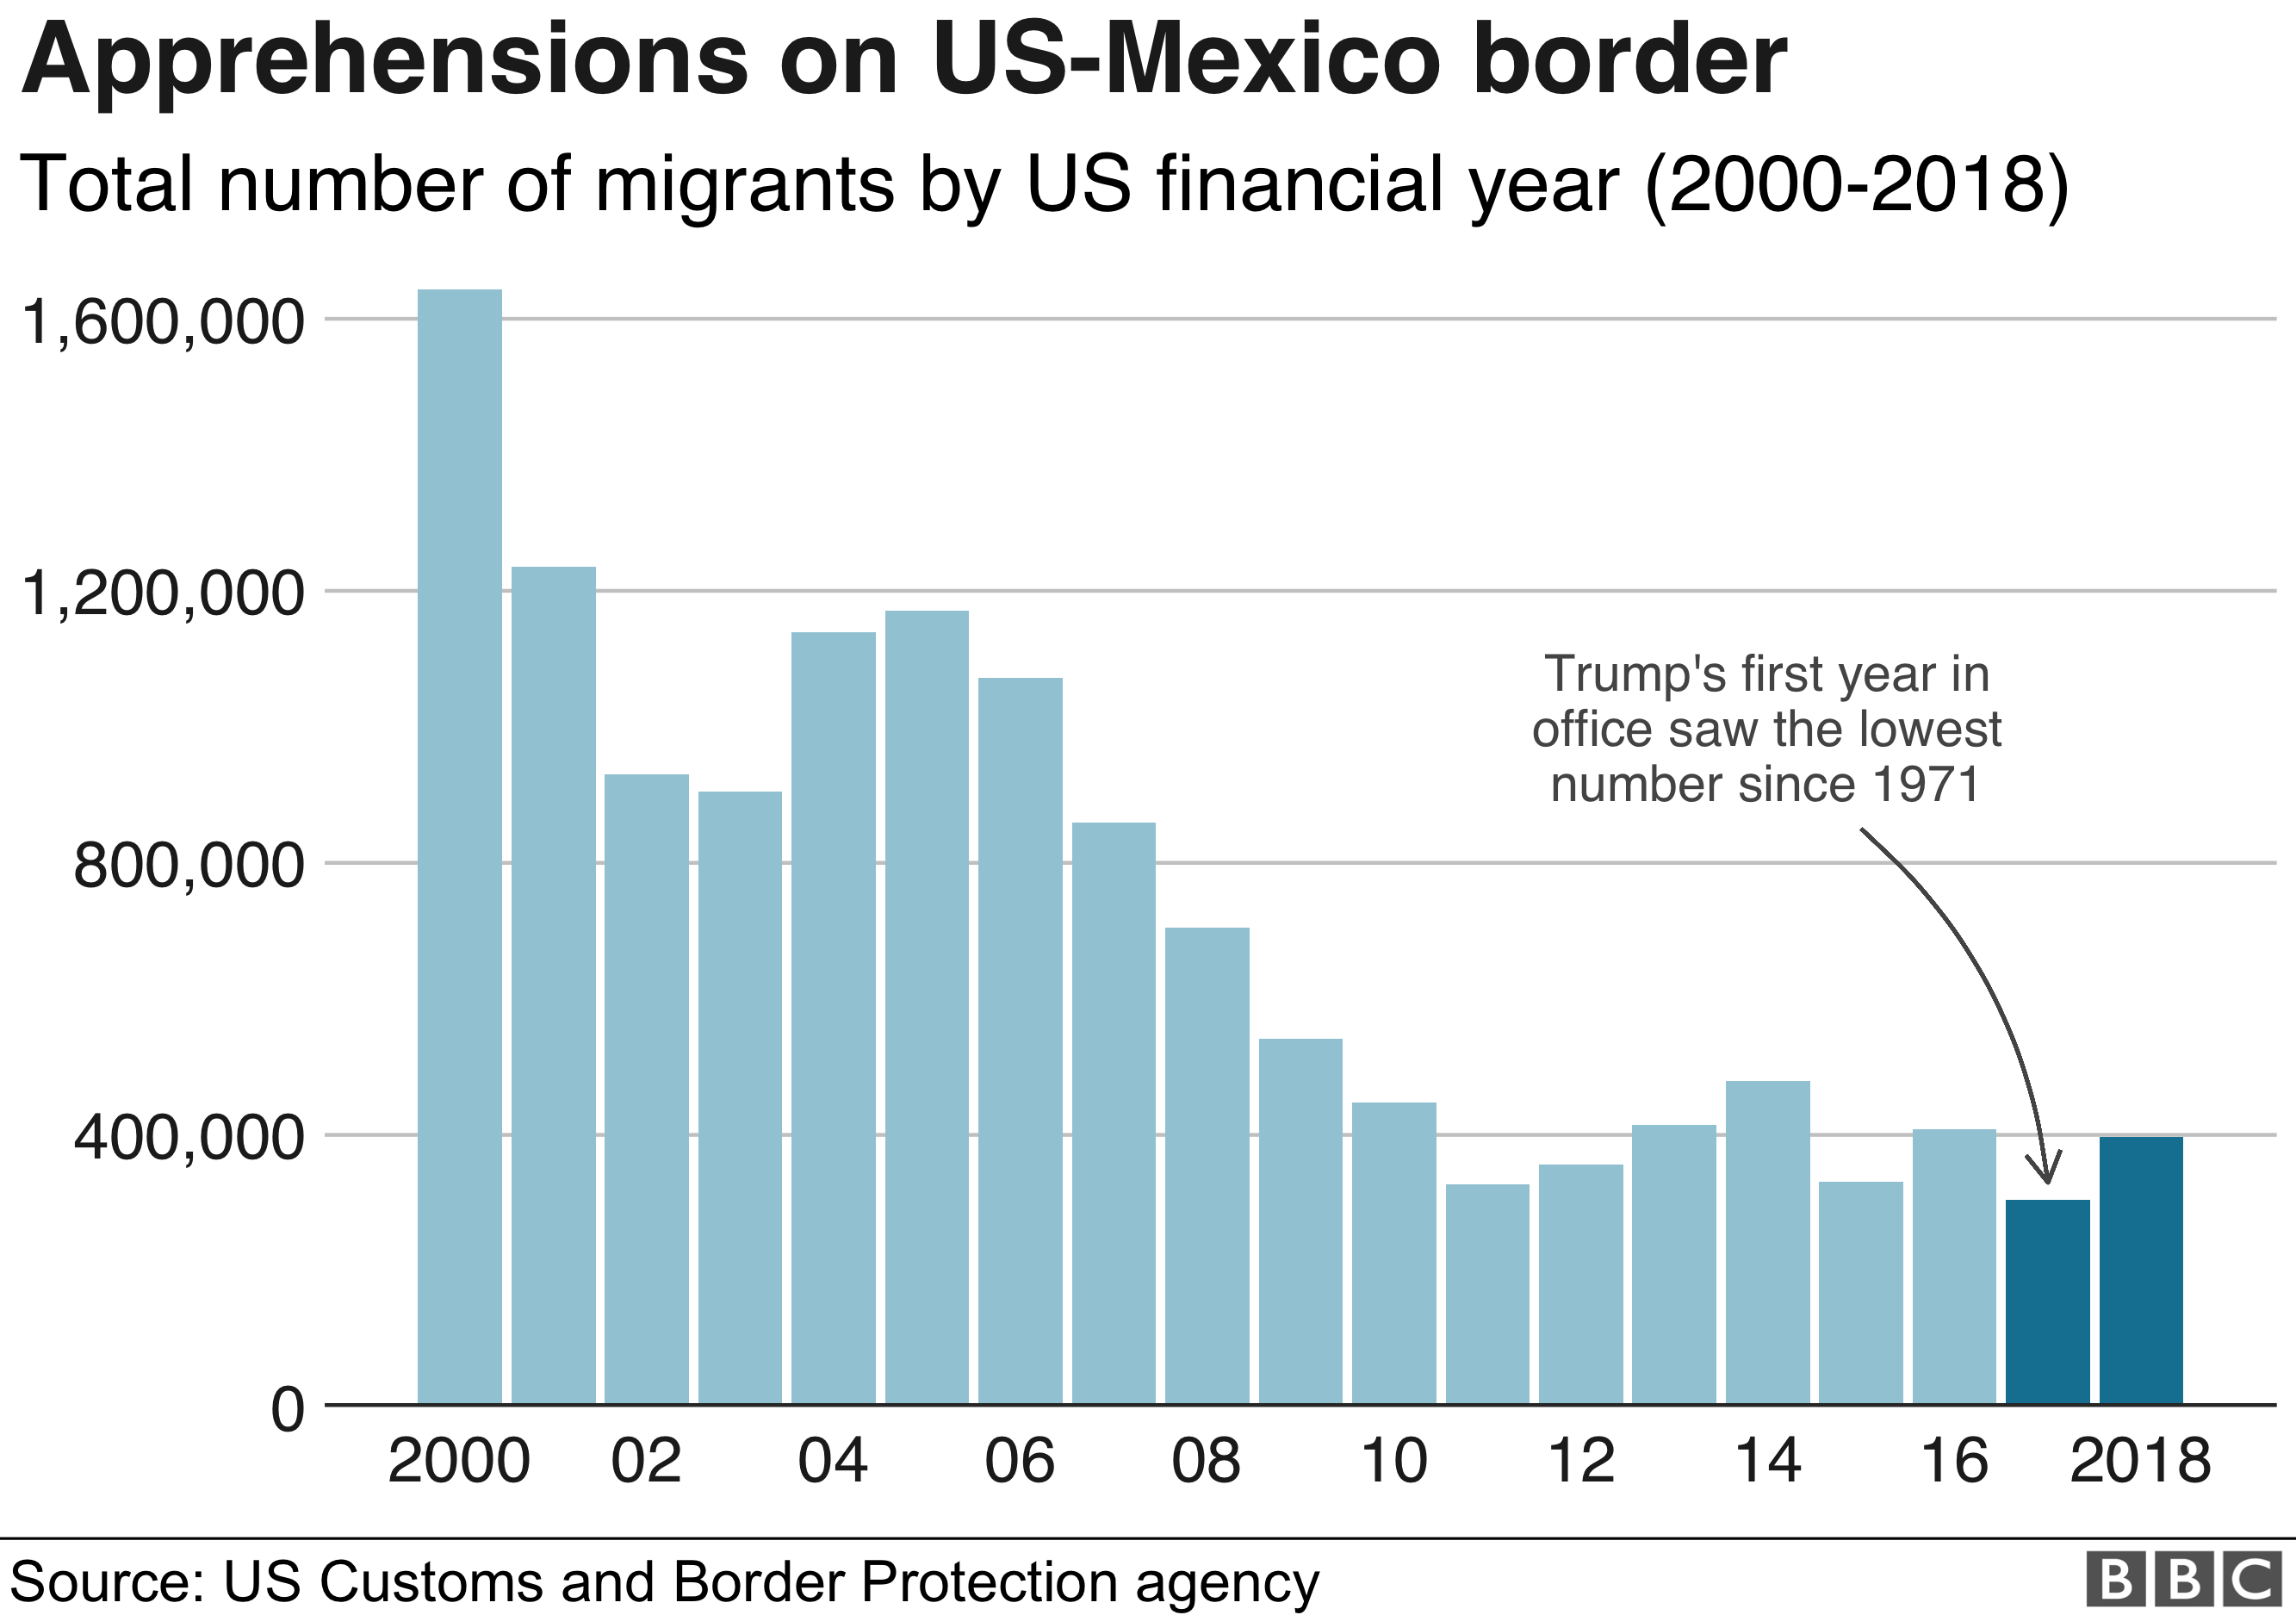 Диаграмма: Опасения на границе США и Мексики были самыми низкими в 2017 году с 2000 года